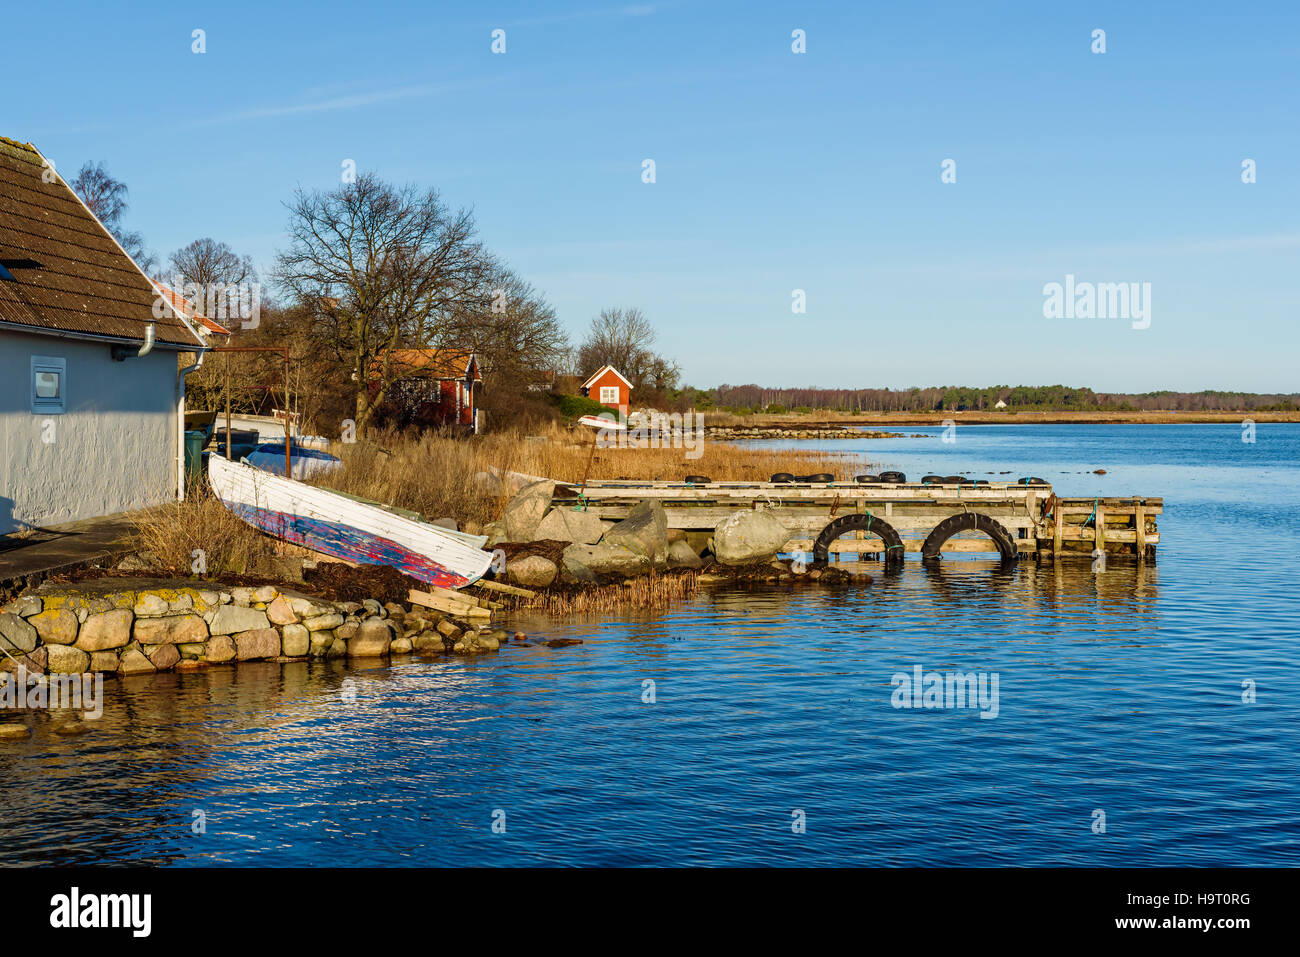 Tirato su imbarcazioni a remi in legno nel paesaggio costiero in caduta. Boathouses in background. Kristianopel in Svezia. Foto Stock